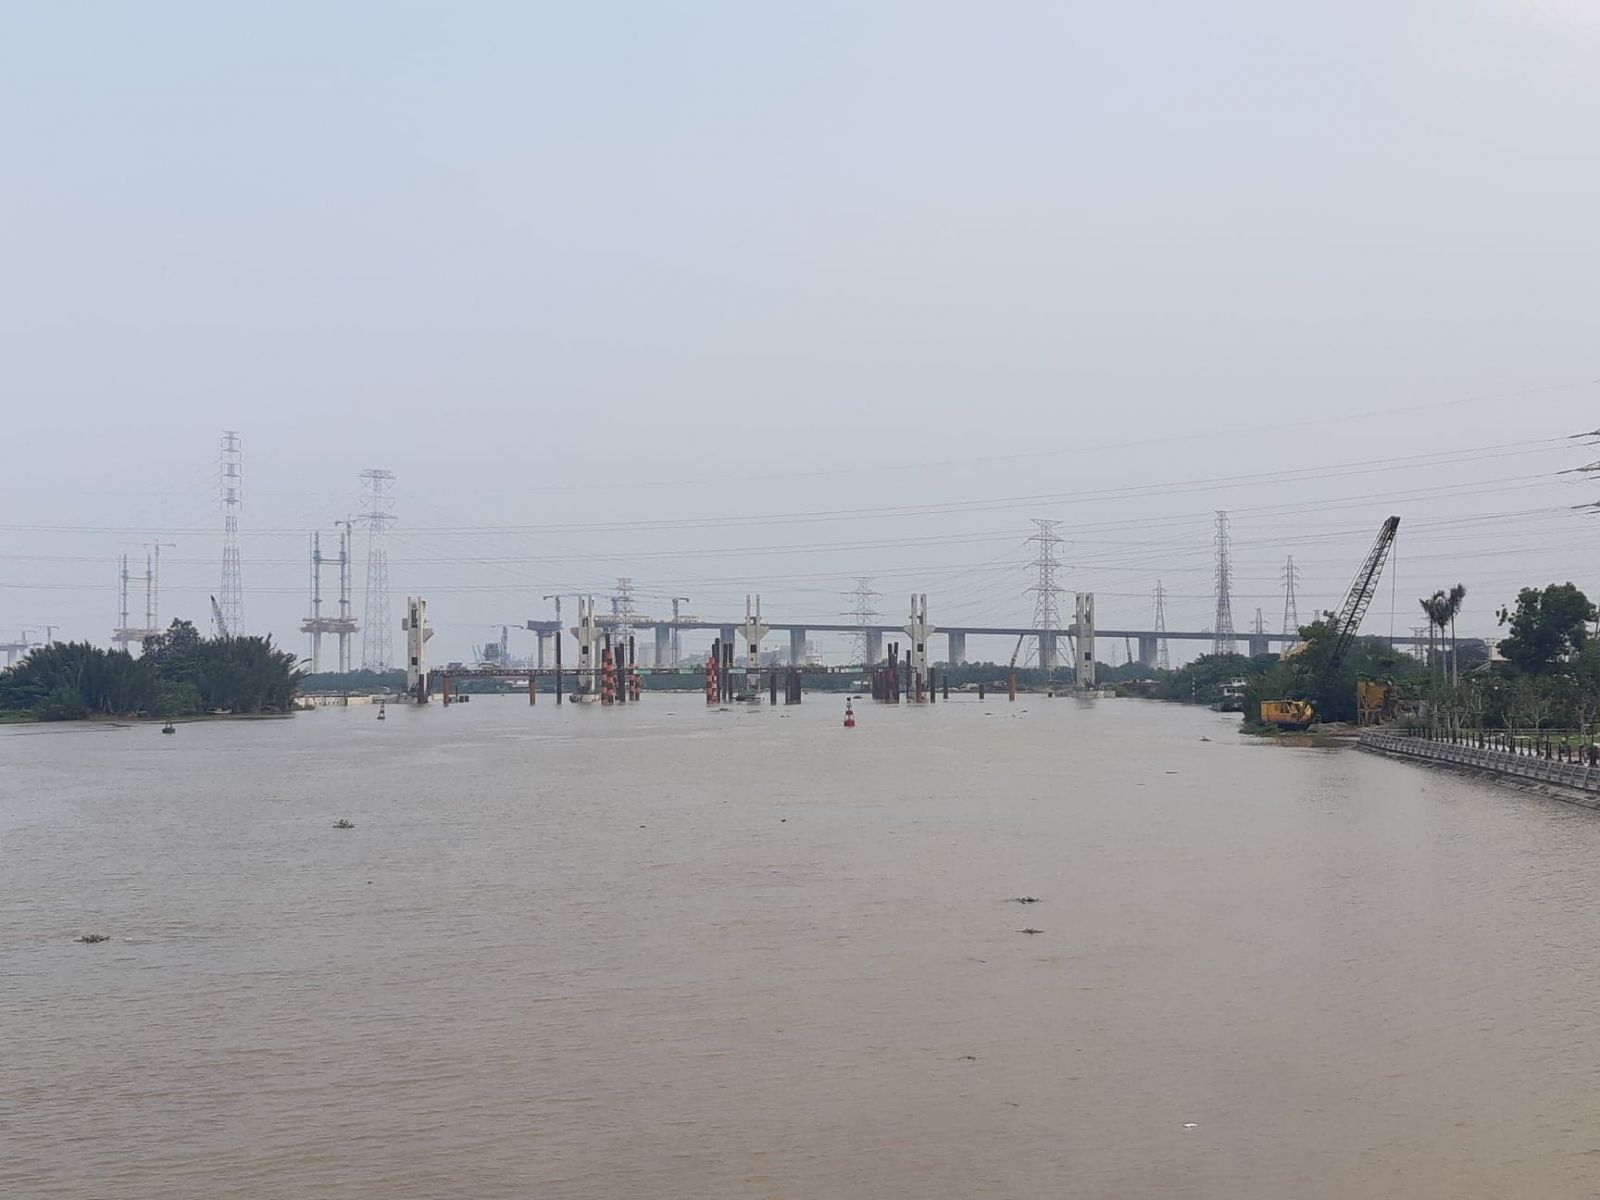 Cầu Bình Khánh nằm trong dự án đường co tốc Bến Lức - Long Thành bắc qua sông Soài Rạp nối giữa huyện Cần Giờ và huyện Nhà Bè 